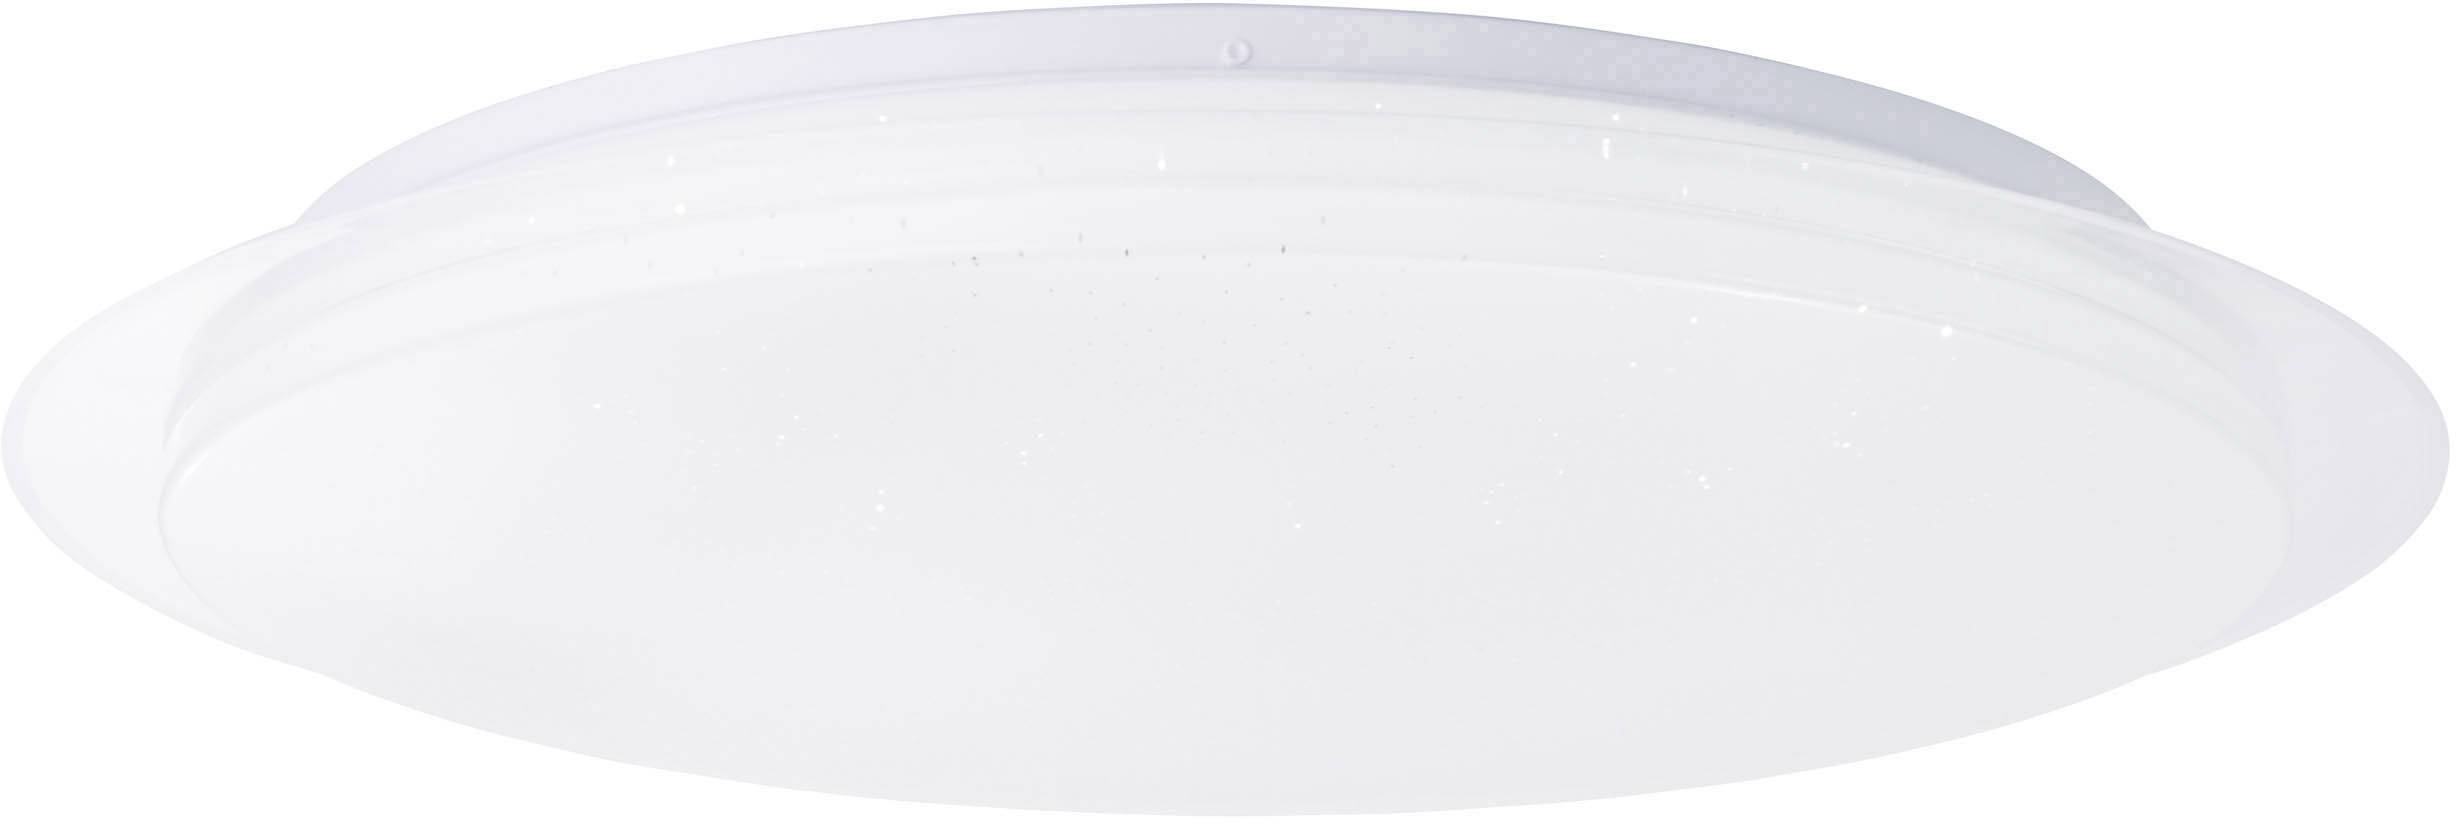 BRILLIANT LED-Bad-Deckenleuchte 60 W Warm-Weiß, Neutral-Weiß, Tageslicht-Weiß Brilliant G96934A05